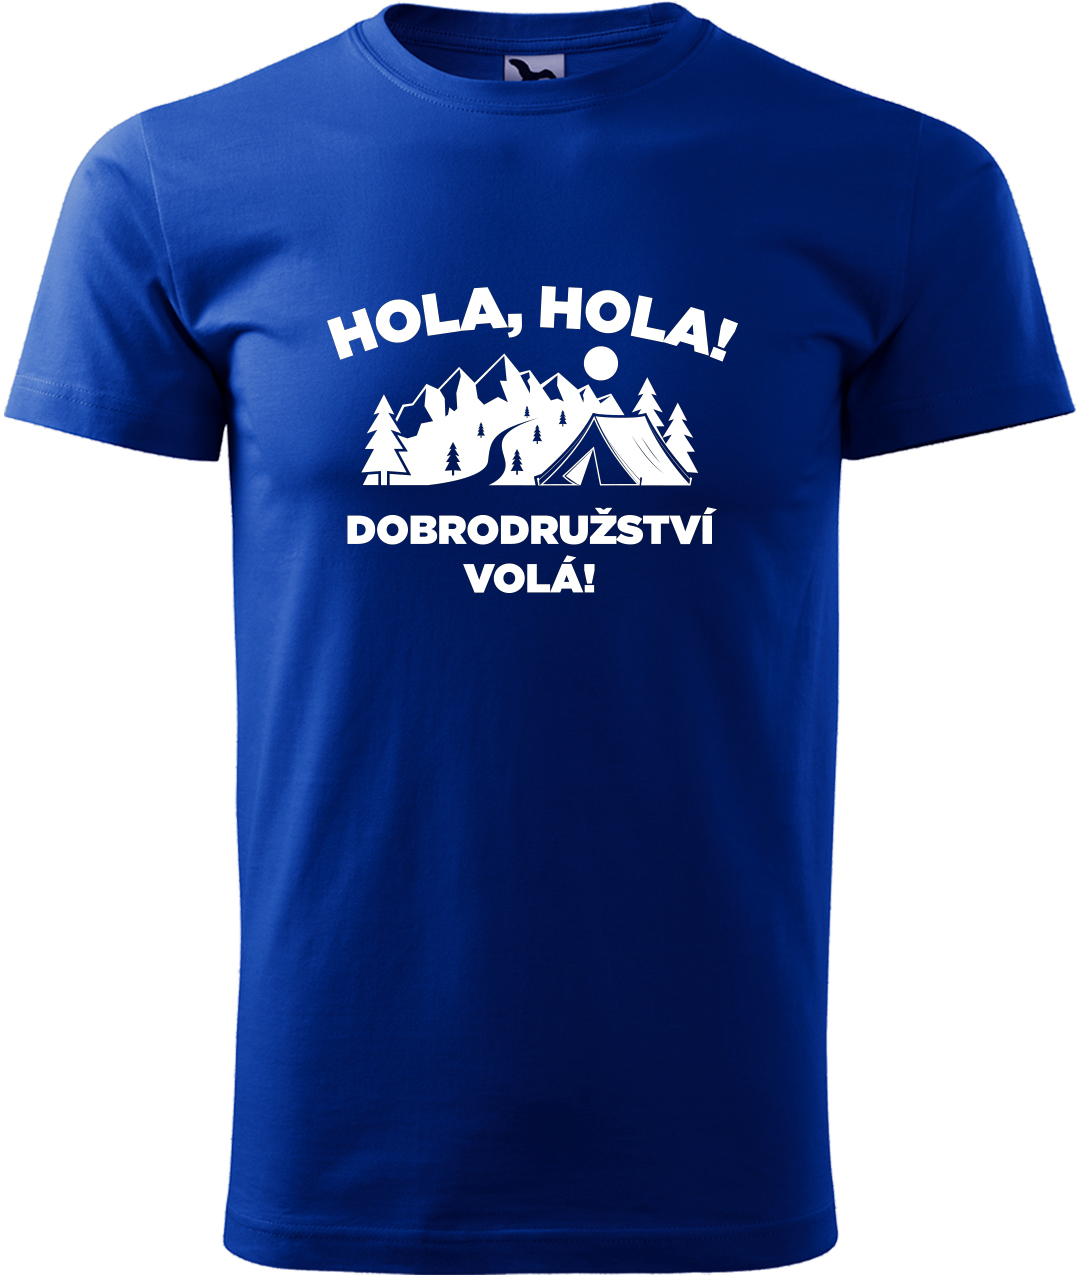 Pánské cestovatelské tričko - Hola hola! Dobrodružství volá! Velikost: M, Barva: Královská modrá (05), Střih: pánský